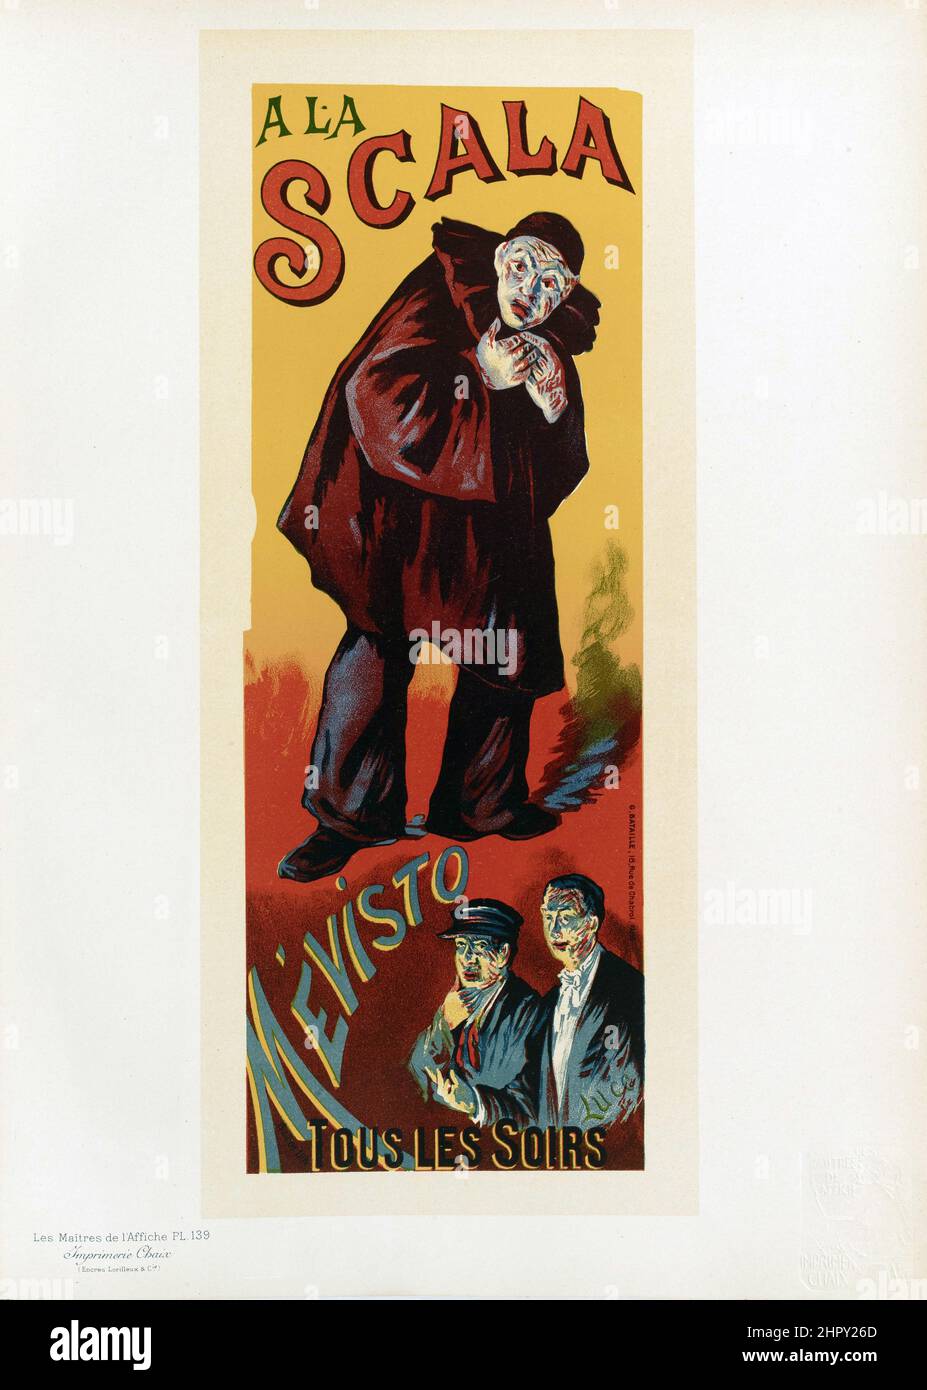 Maitres de l'affiche Vol 3 - Placa 139 - Maximilien Luce, 1895 - A La Scala, hazaña de Mevisto. Un payaso. Tous Les Soirs. Foto de stock